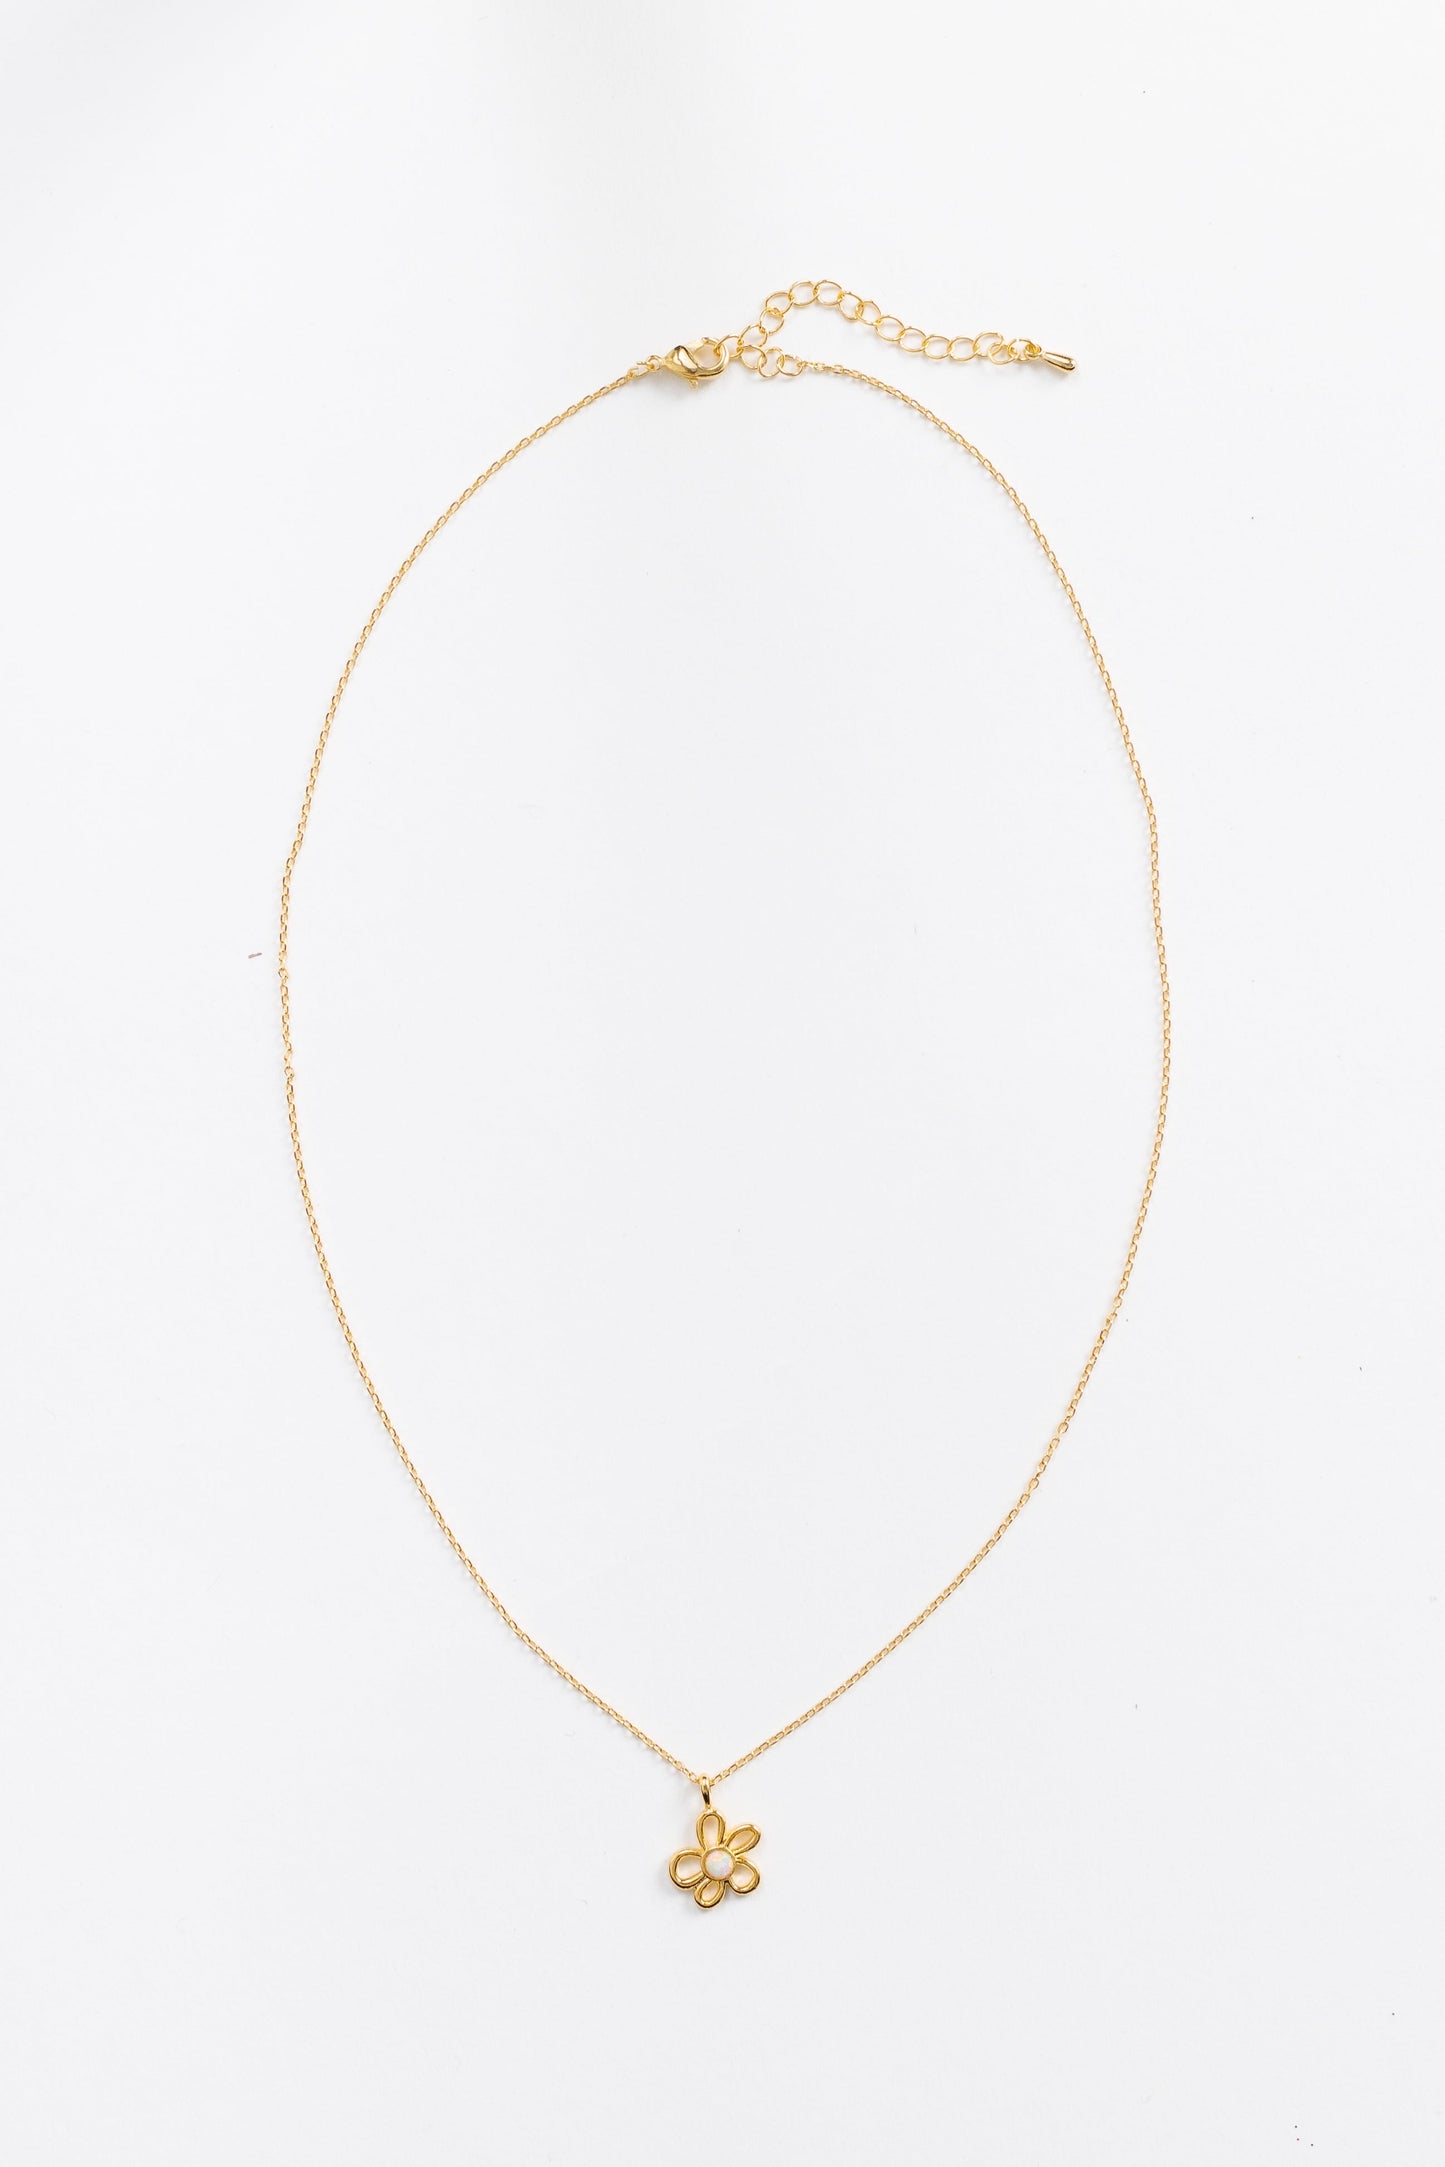 Cove Daisy Retro Necklace WOMEN'S NECKLACE Cove Accessories Gold 16" 